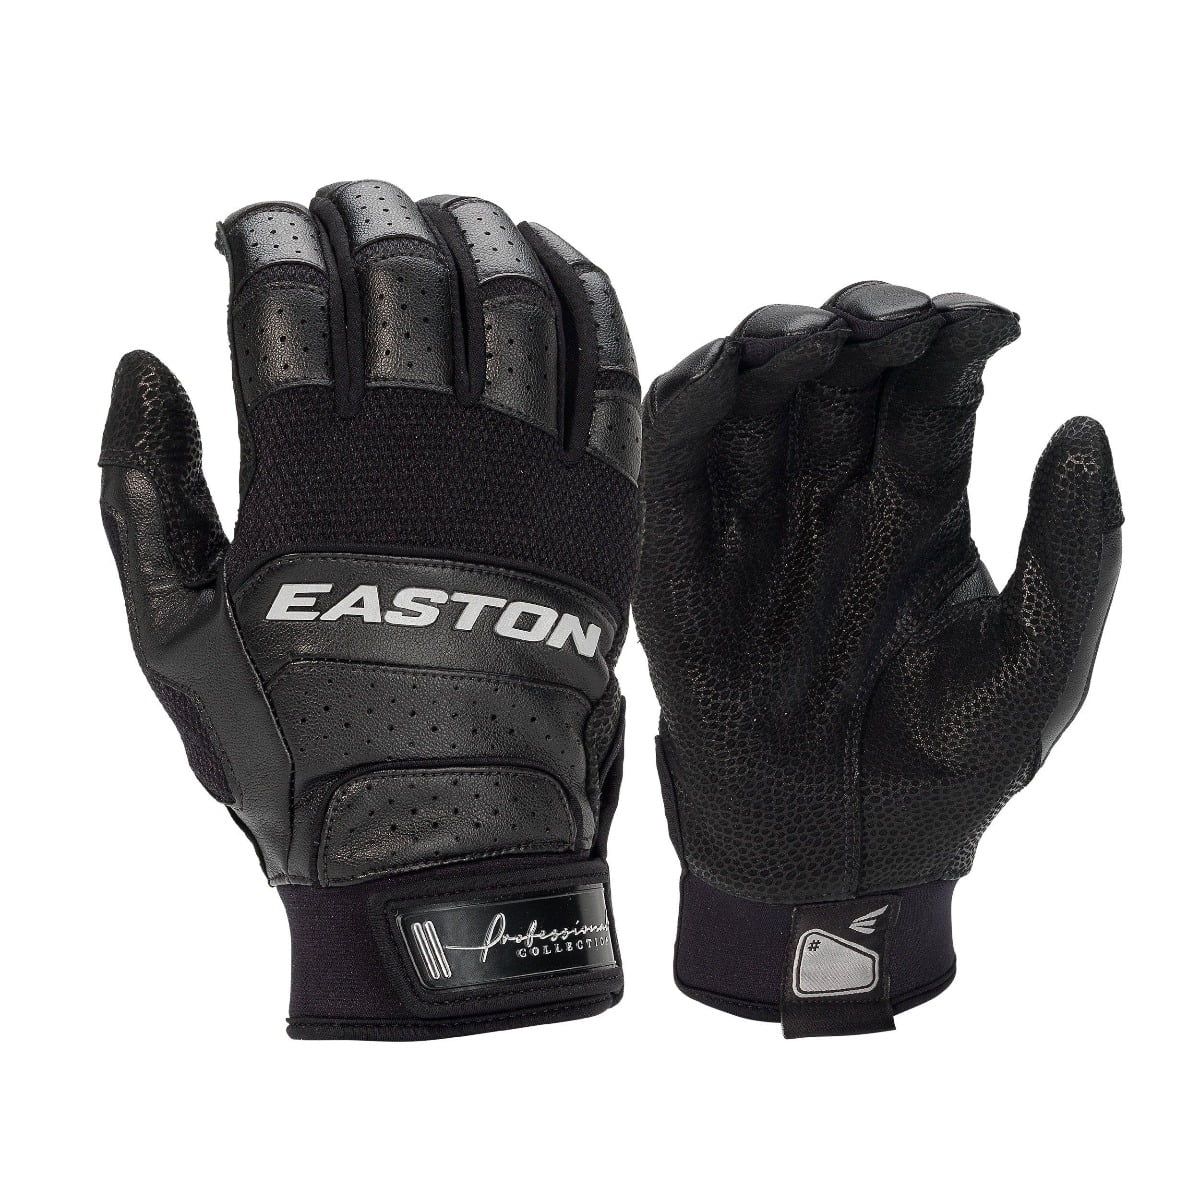 1 Pair Easton Z7 Hyperskin Batting Gloves Men's Medium=7.25"-7.5" Red/White/Navy 